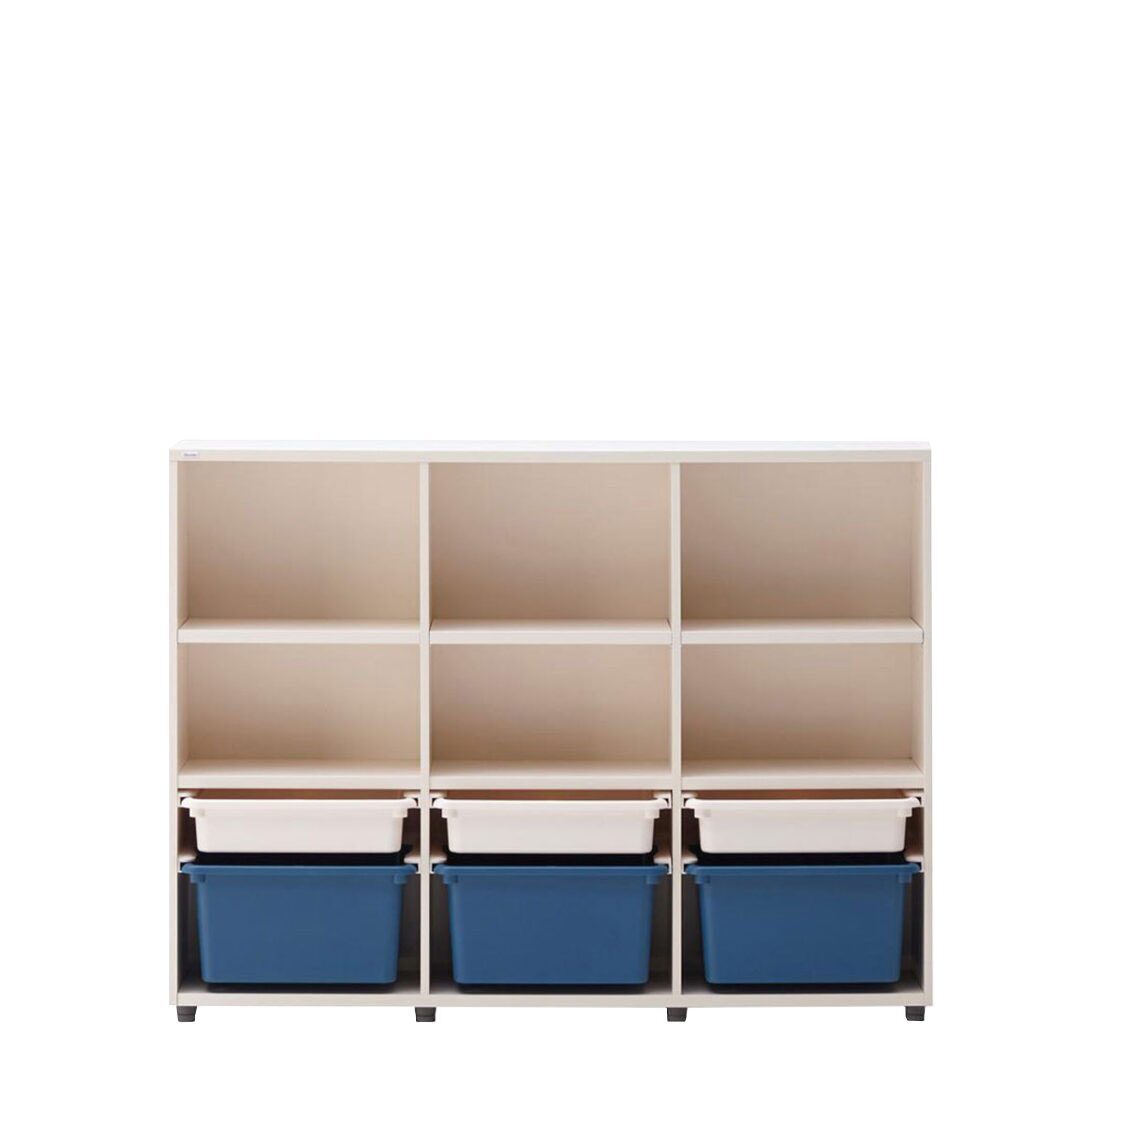 Iloom 3-Story Bookshelf with PL Box Storage 1400W Blue